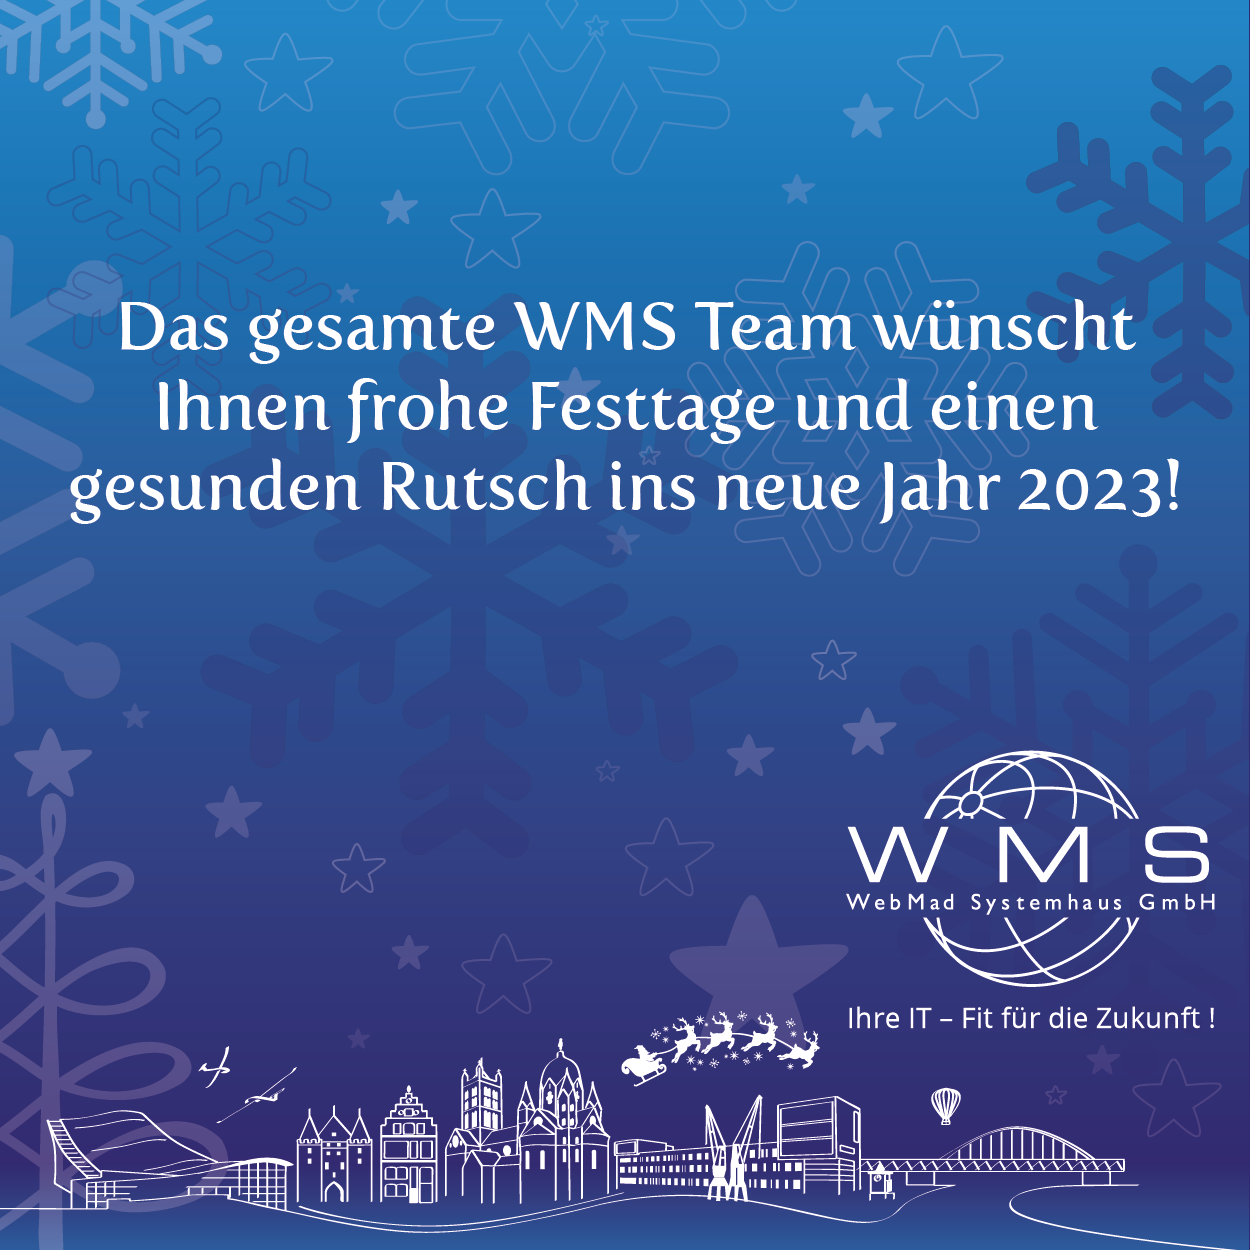 Das gesamte WMS Team wünscht Ihnen frohe Festtage und einen gesunden Rutsch ins neue Jahr 2023!